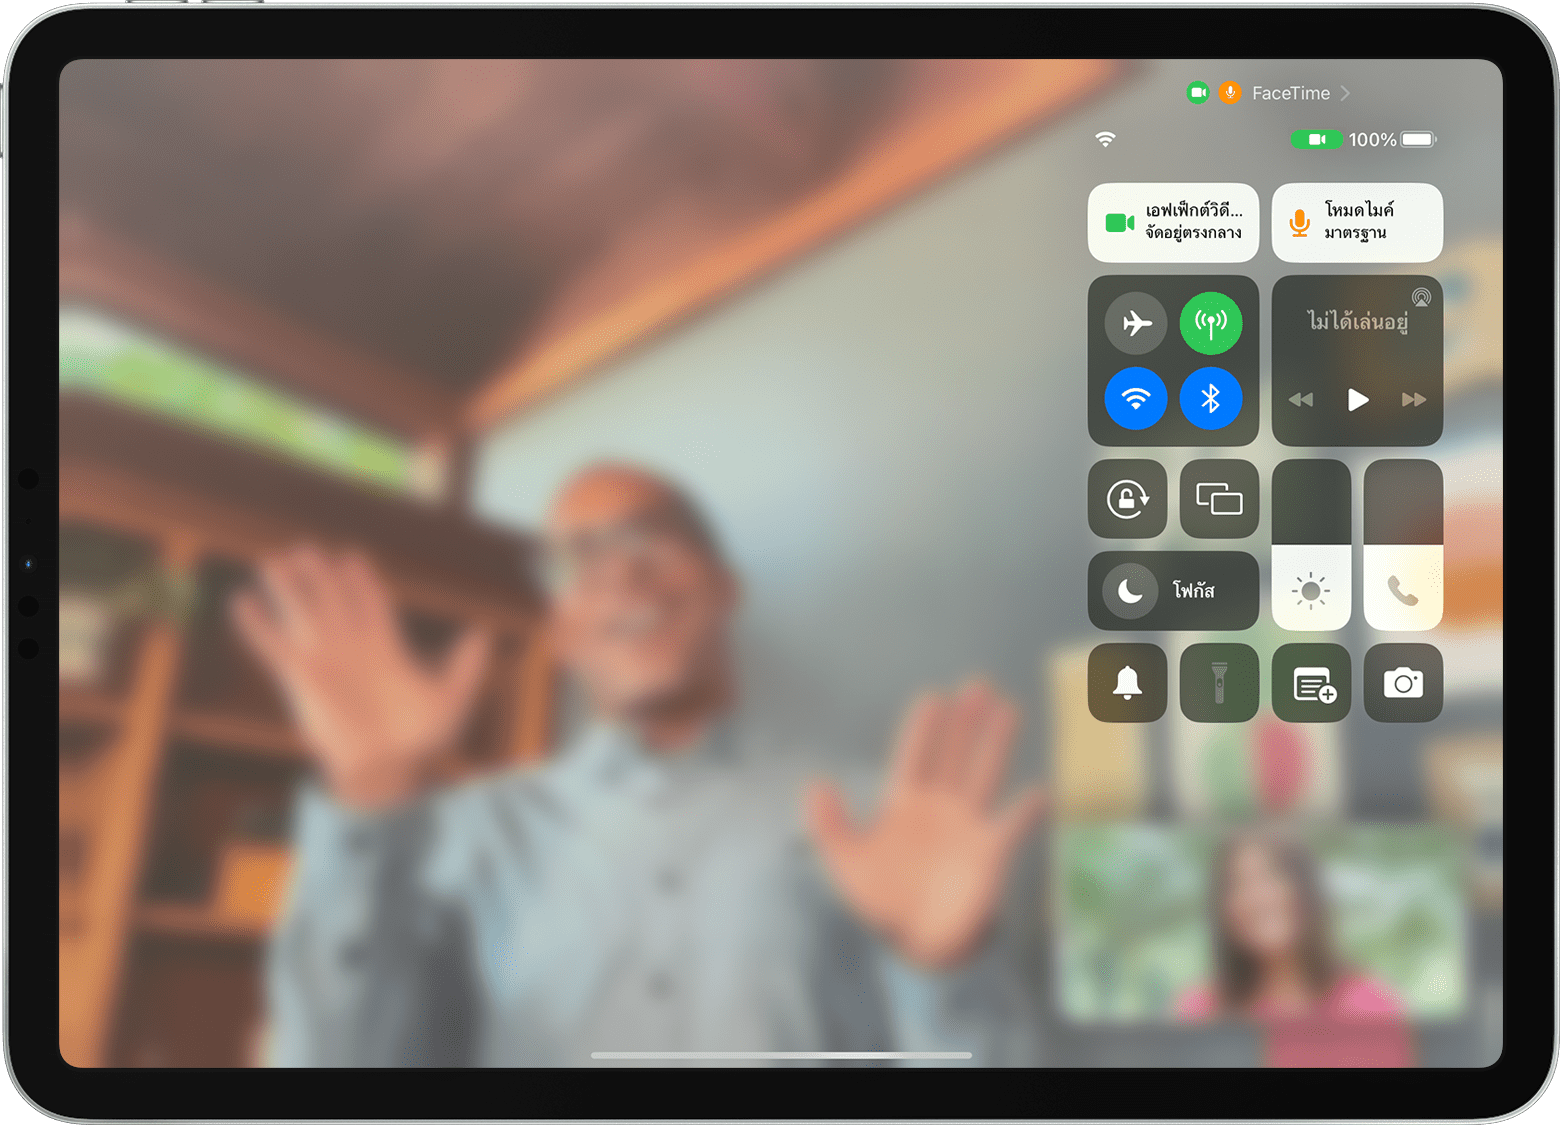 หน้าจอ iPad ที่แสดงการโทร FaceTime โดยที่มองเห็นศูนย์ควบคุม รวมถึงปุ่มเอฟเฟ็กต์วิดีโอด้วย